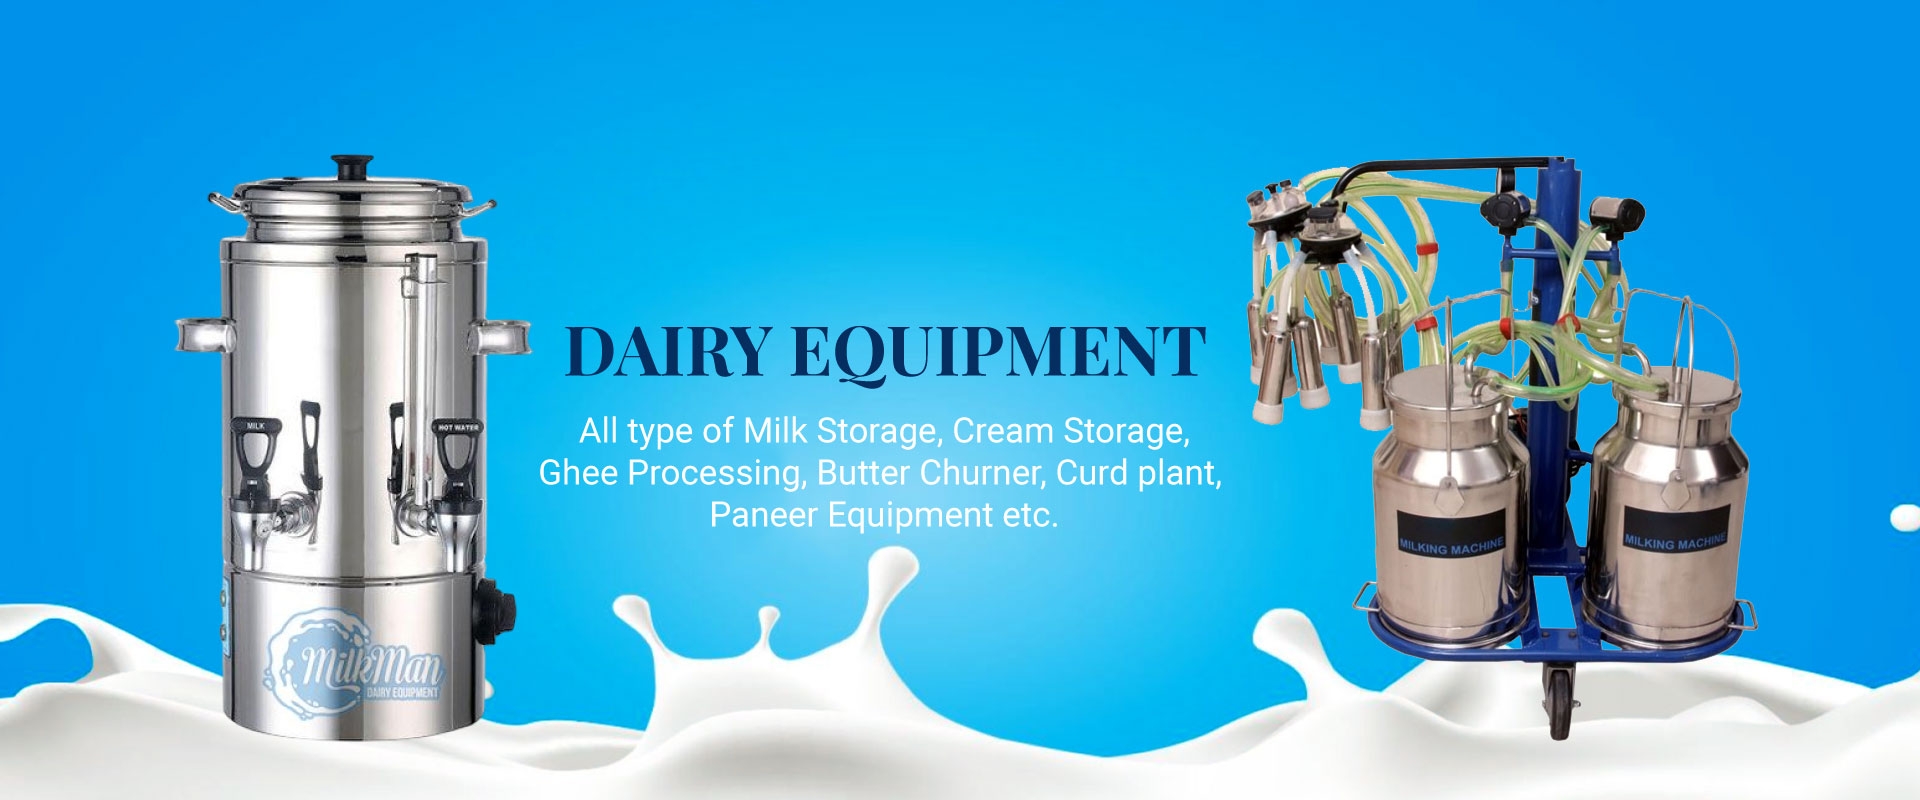 Dairy Equipment in United Arab Emirates